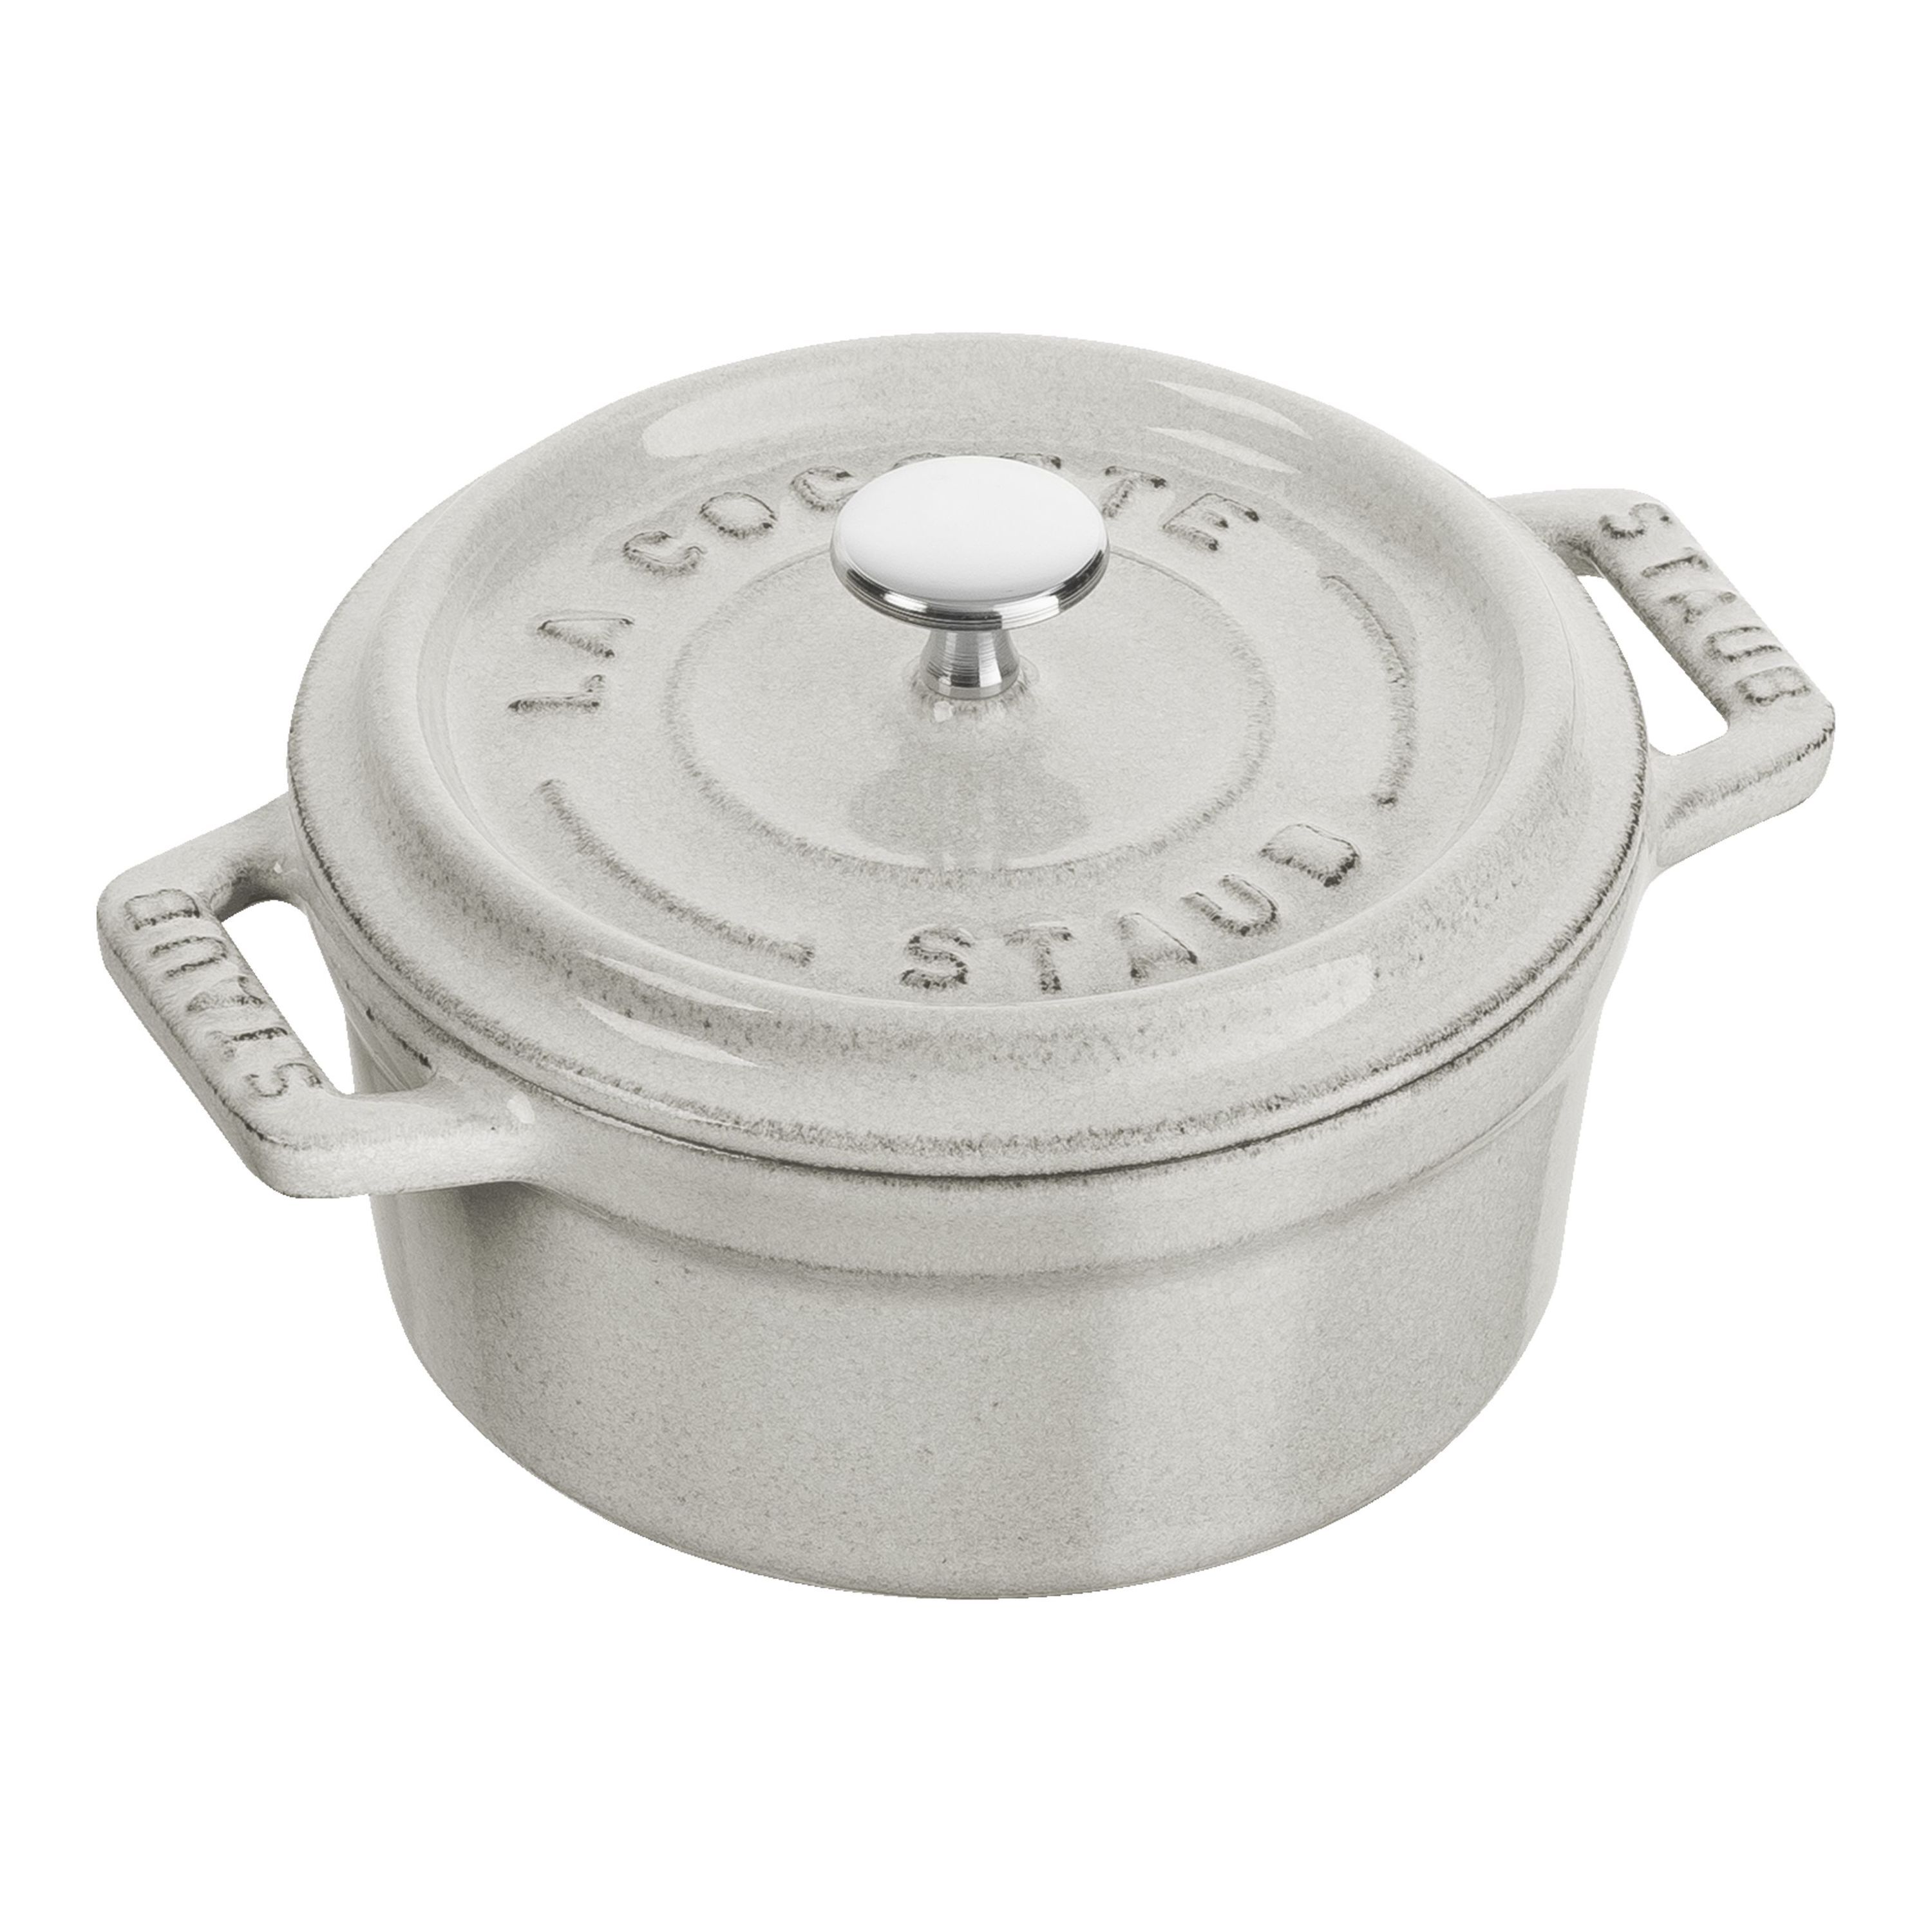 ラウンド 10cm| 鋳物ホーロー鍋| ストウブ(STAUB)公式通販